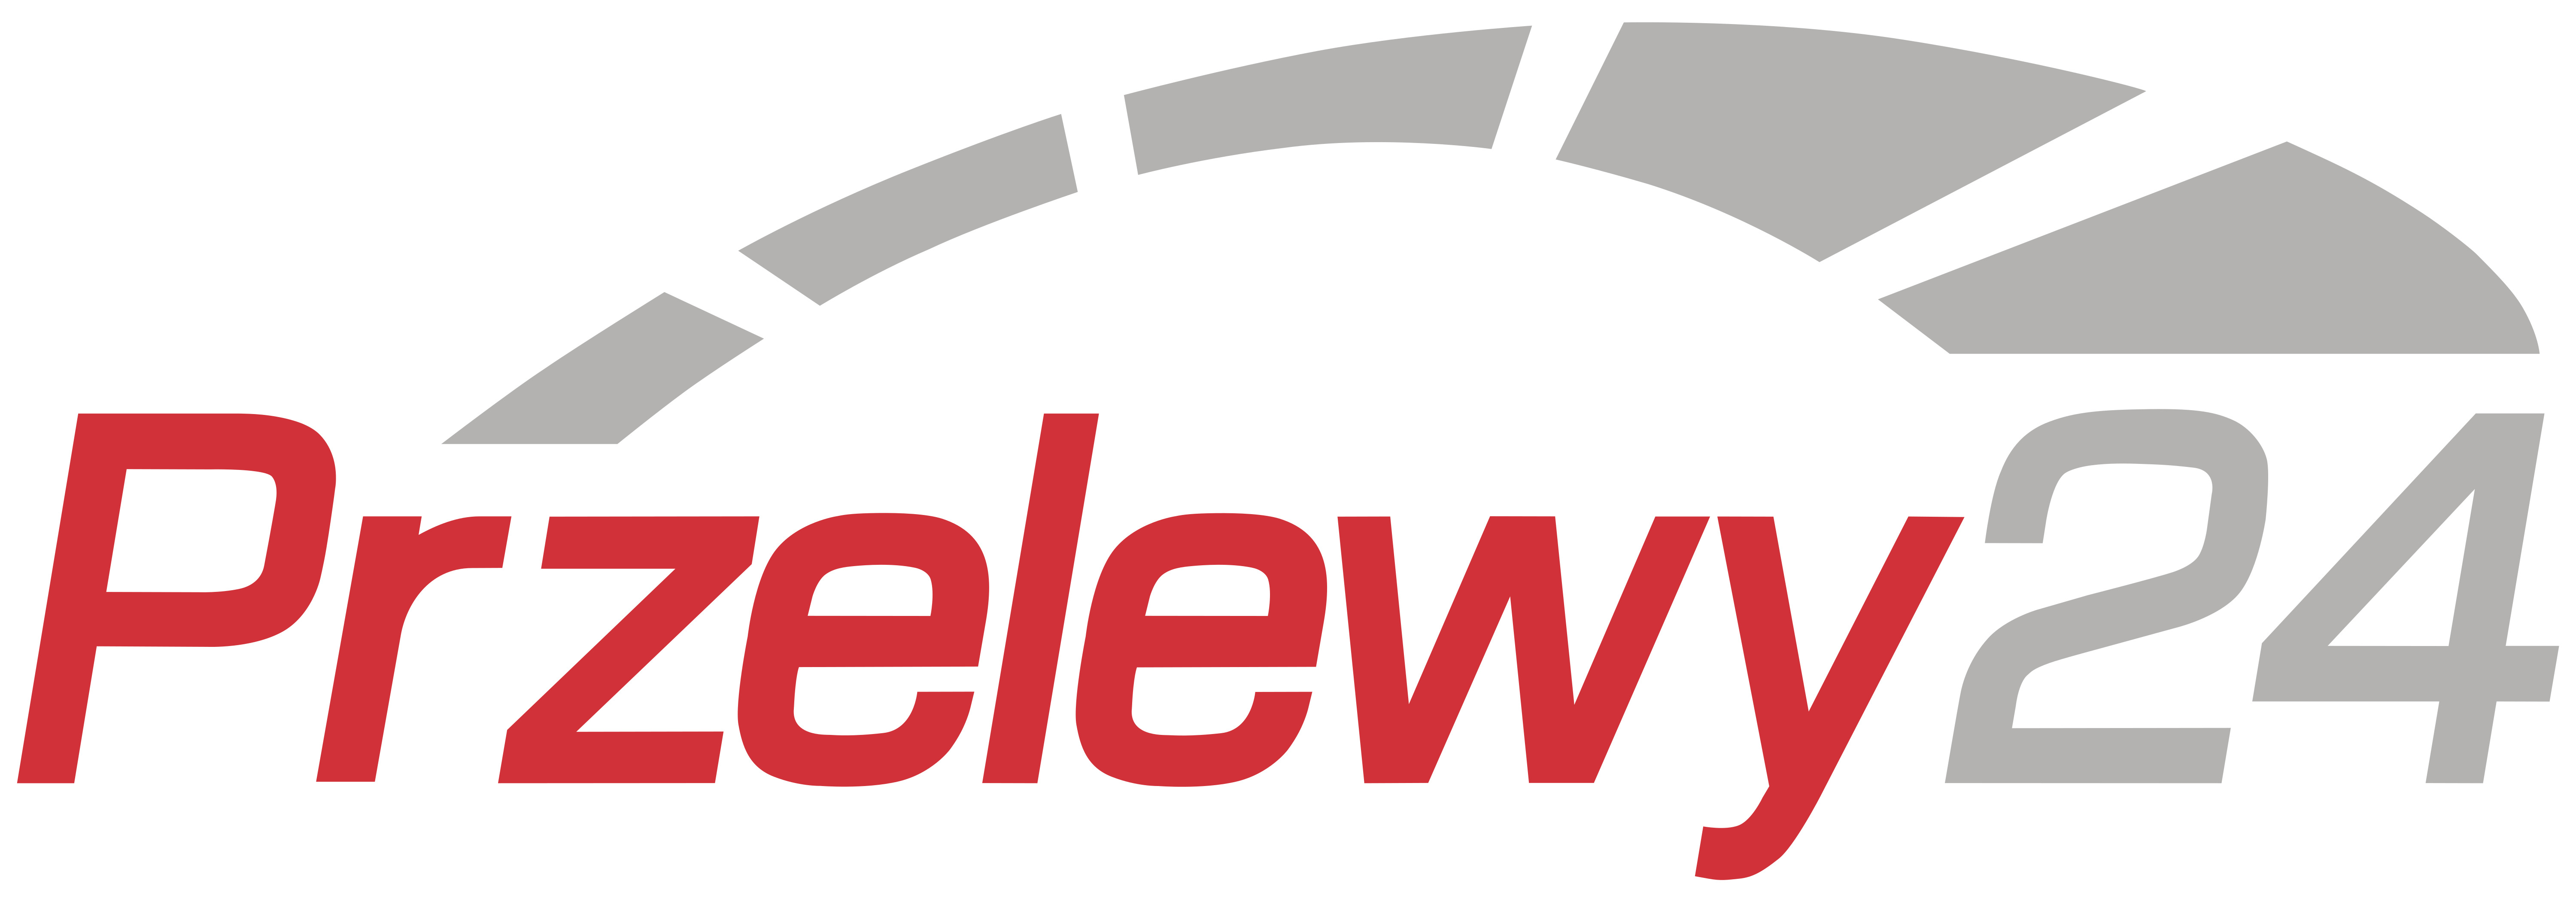 przelewy24-logo.jpg